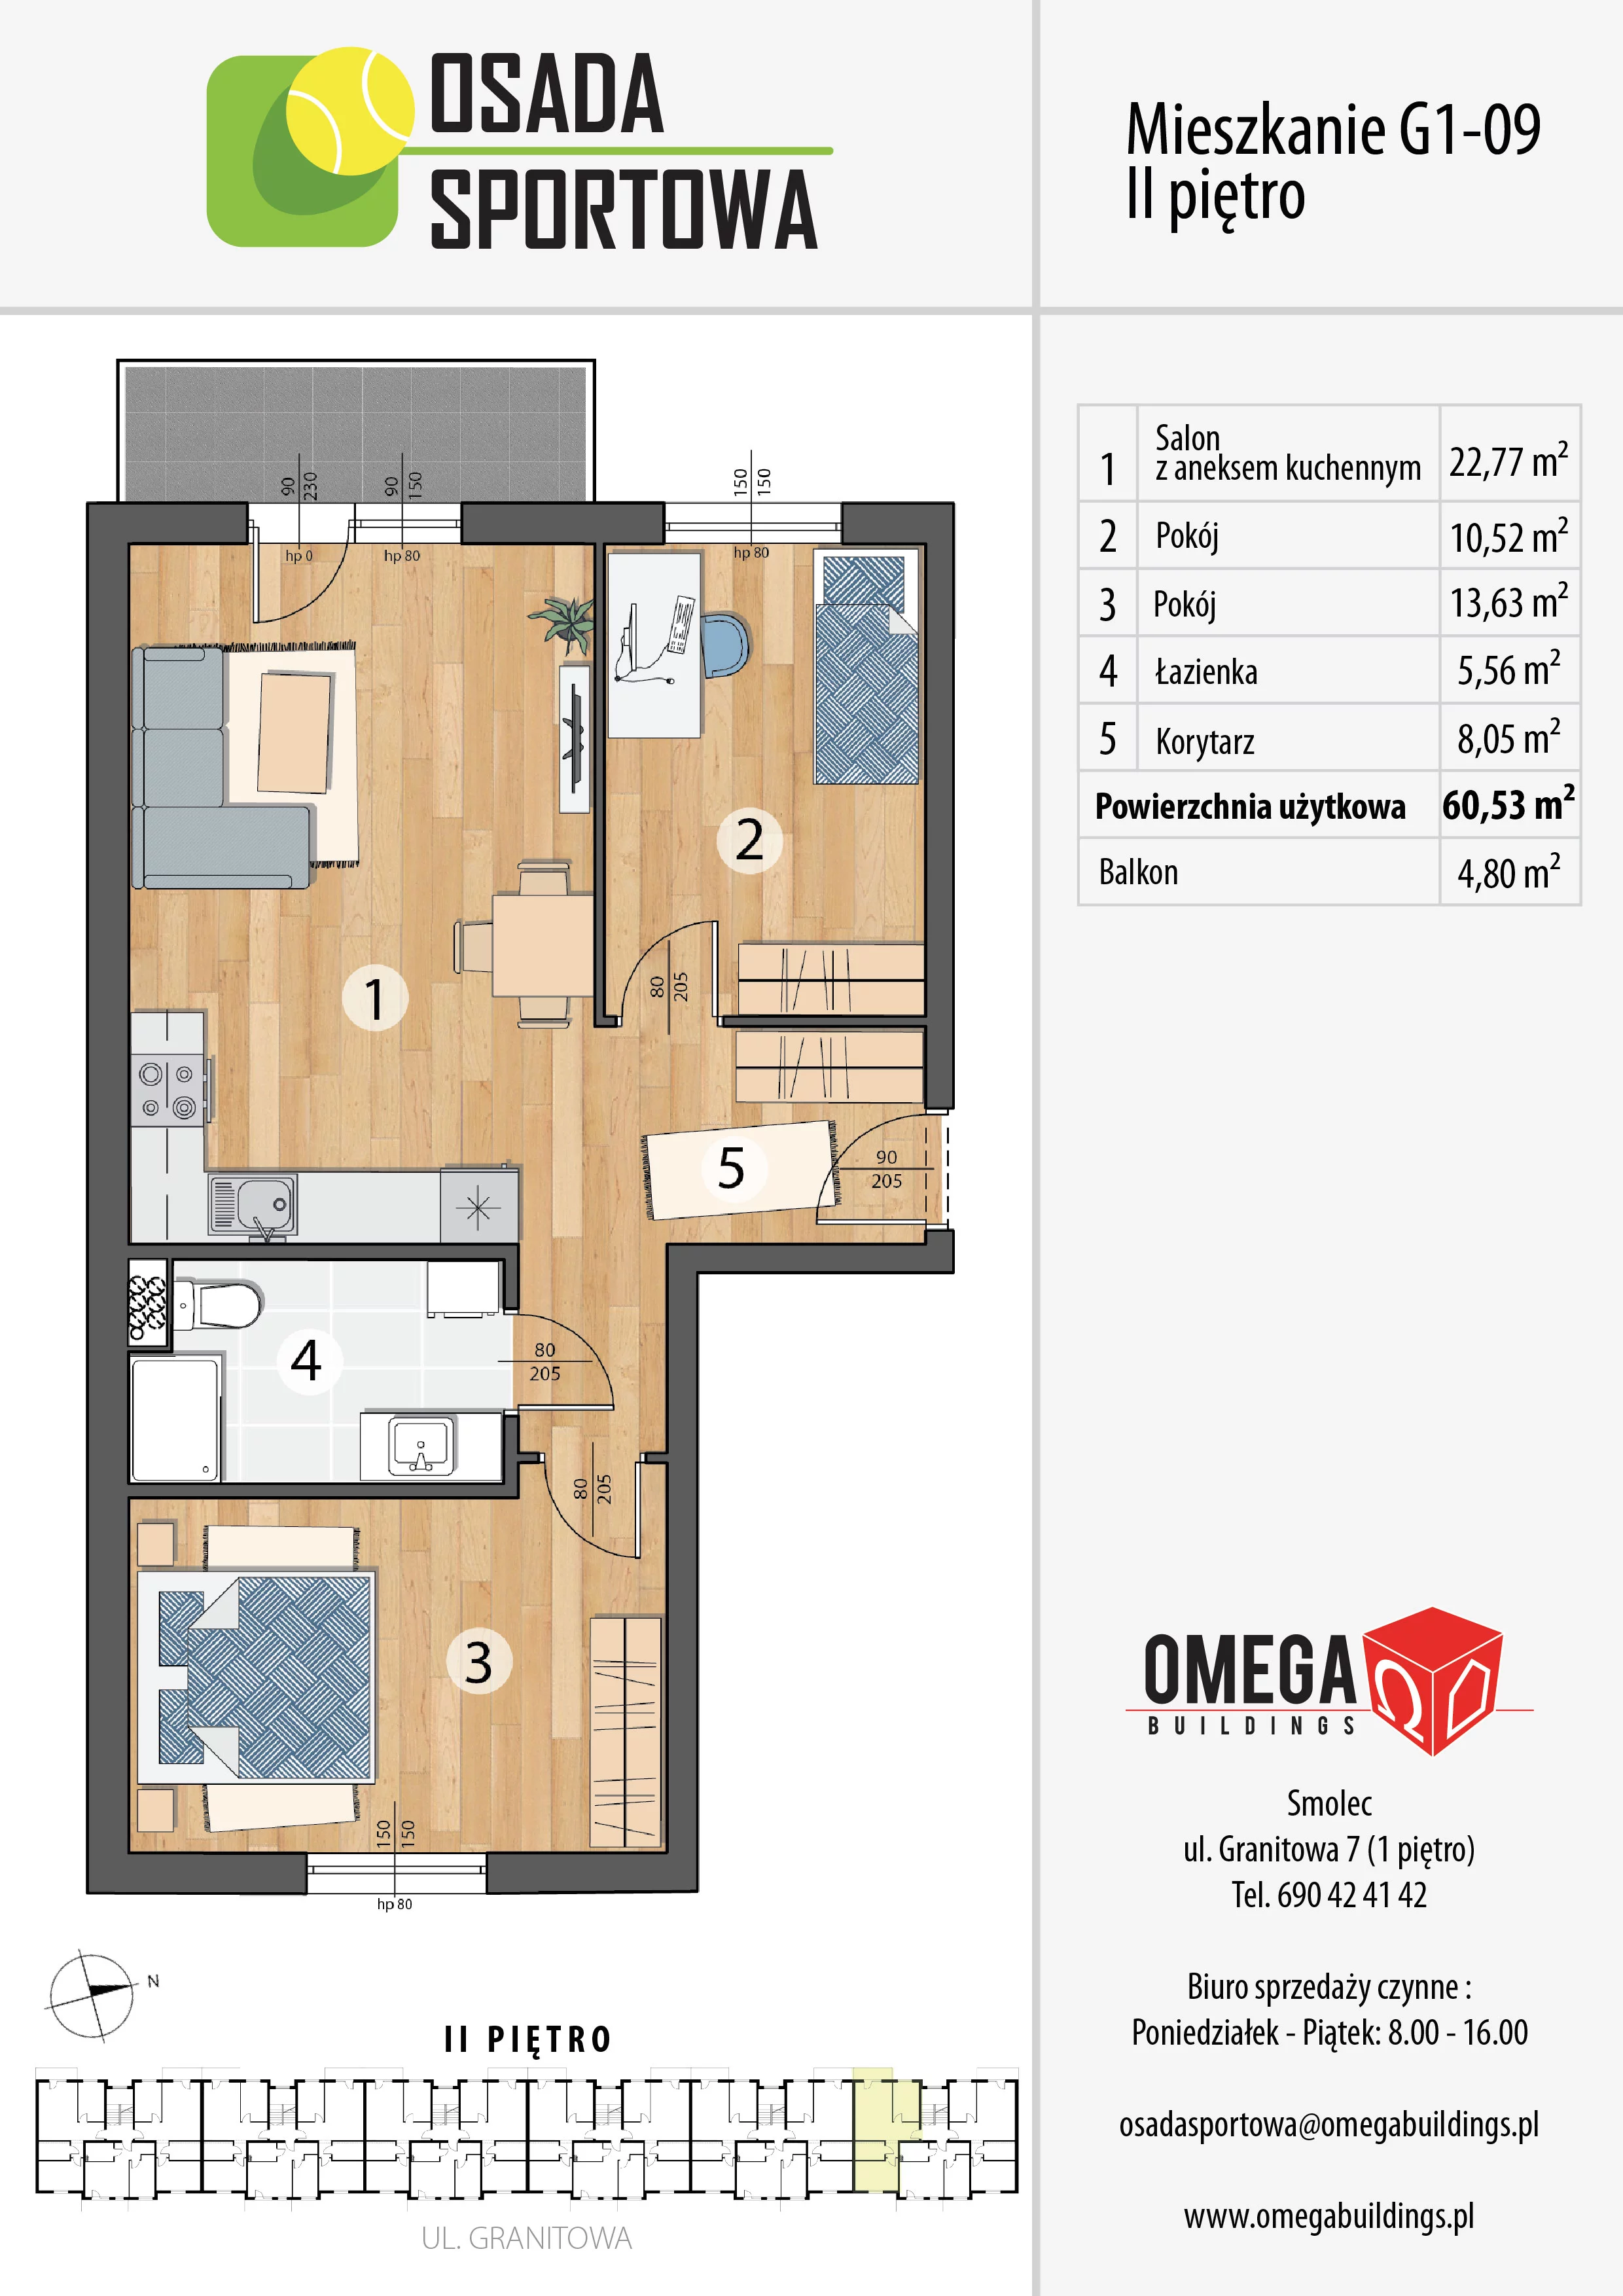 Mieszkanie 60,53 m², piętro 2, oferta nr G1-09, Osada Sportowa Budynek G, Smolec, ul. Granitowa 52-62